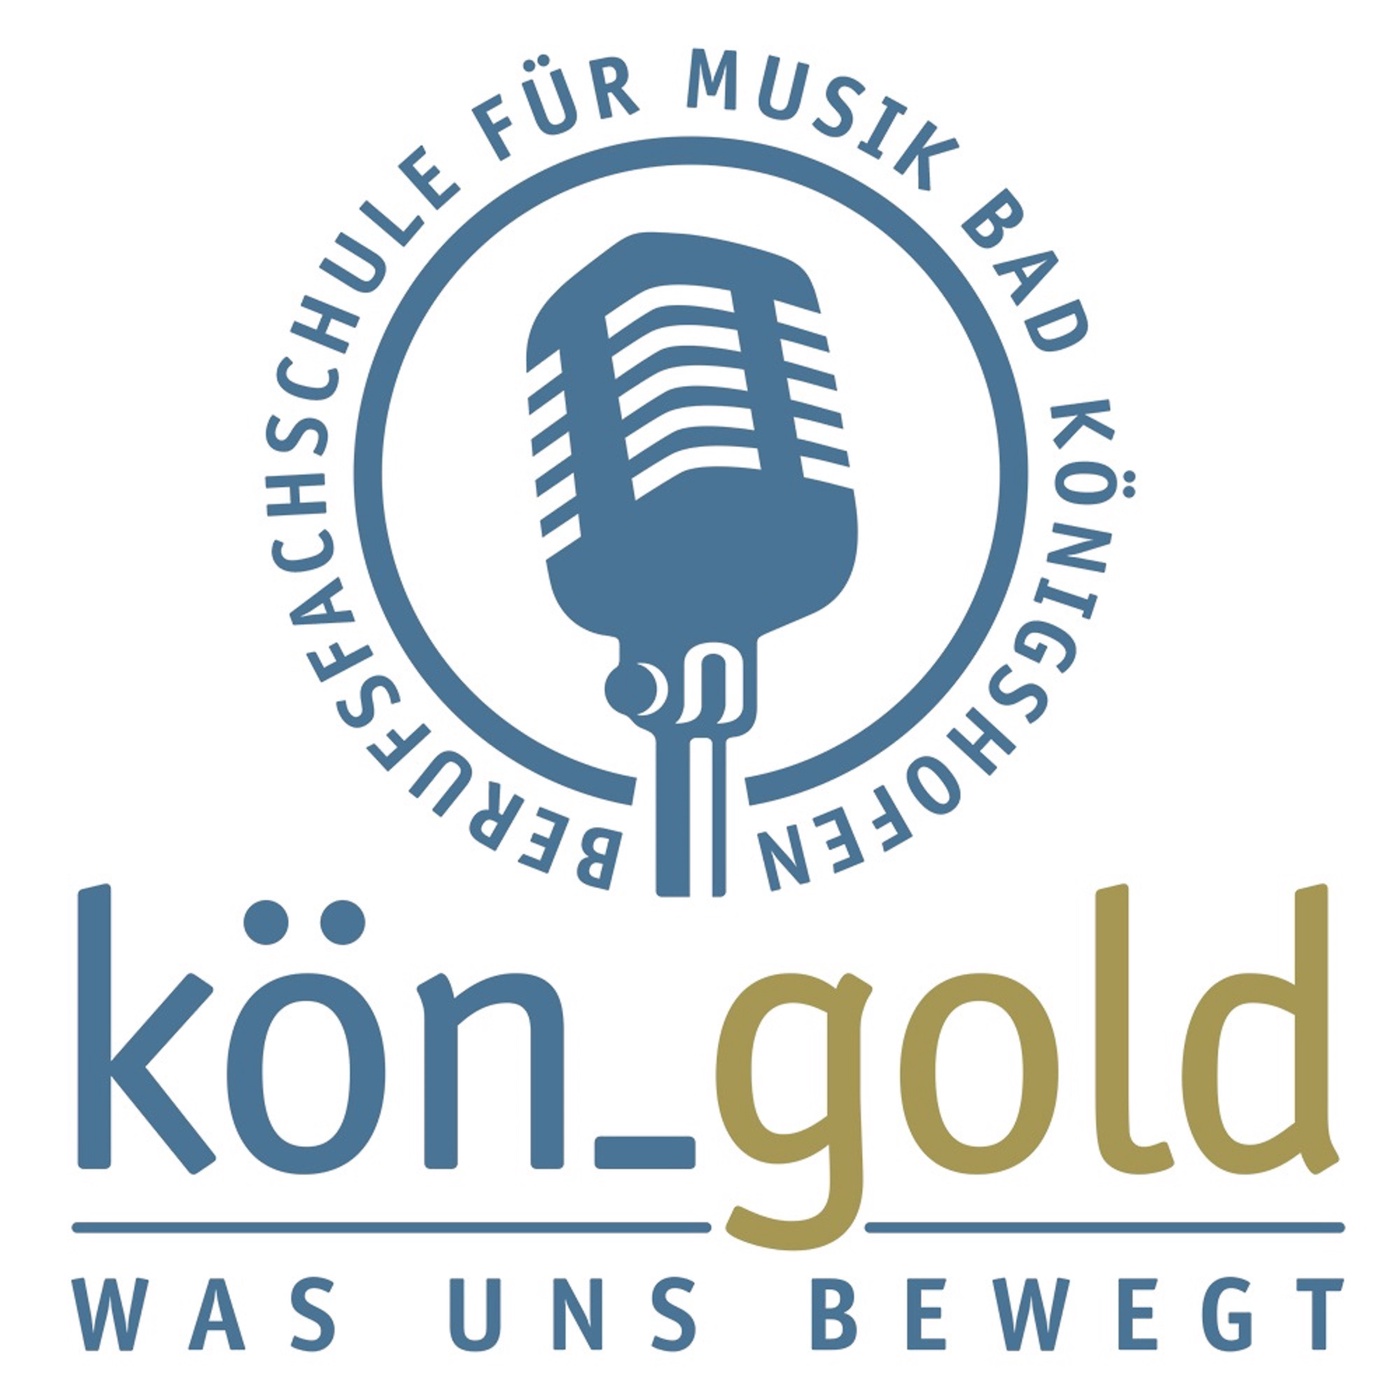 köngold - Berufsfachschule für Musik Bad Königshofen und Lise Gold